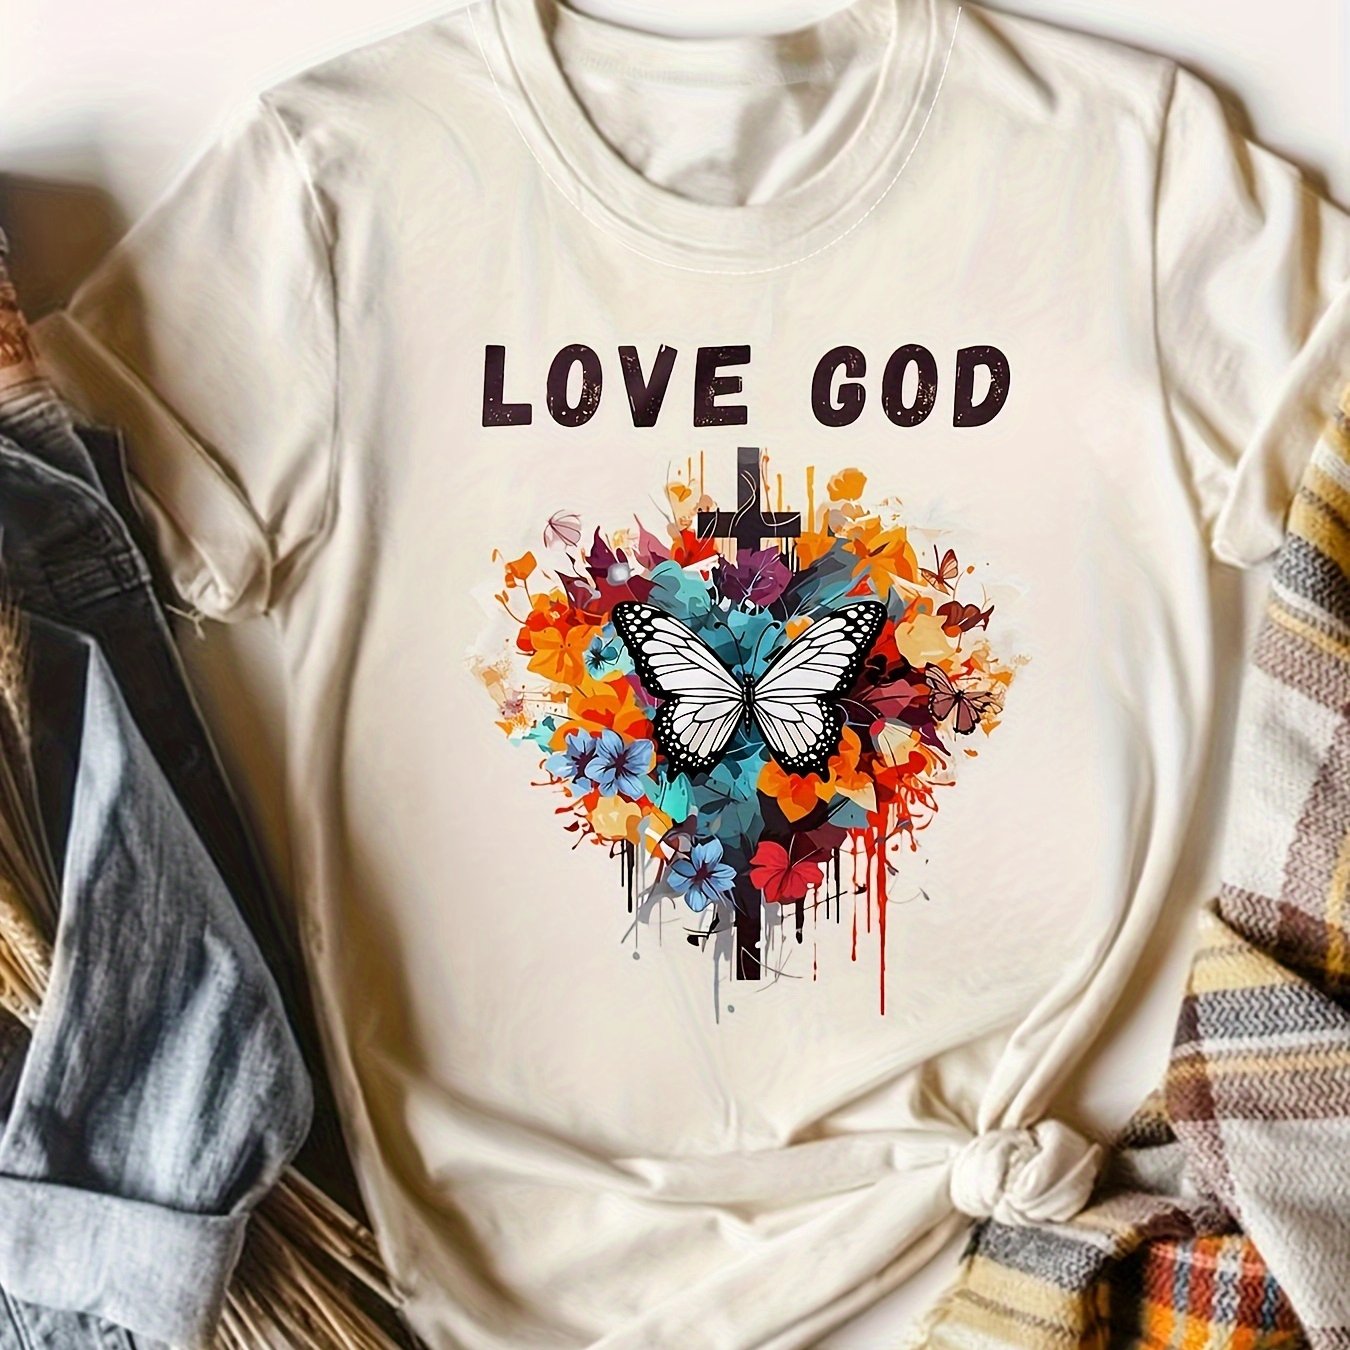 Love God Women's Christian T-shirt claimedbygoddesigns